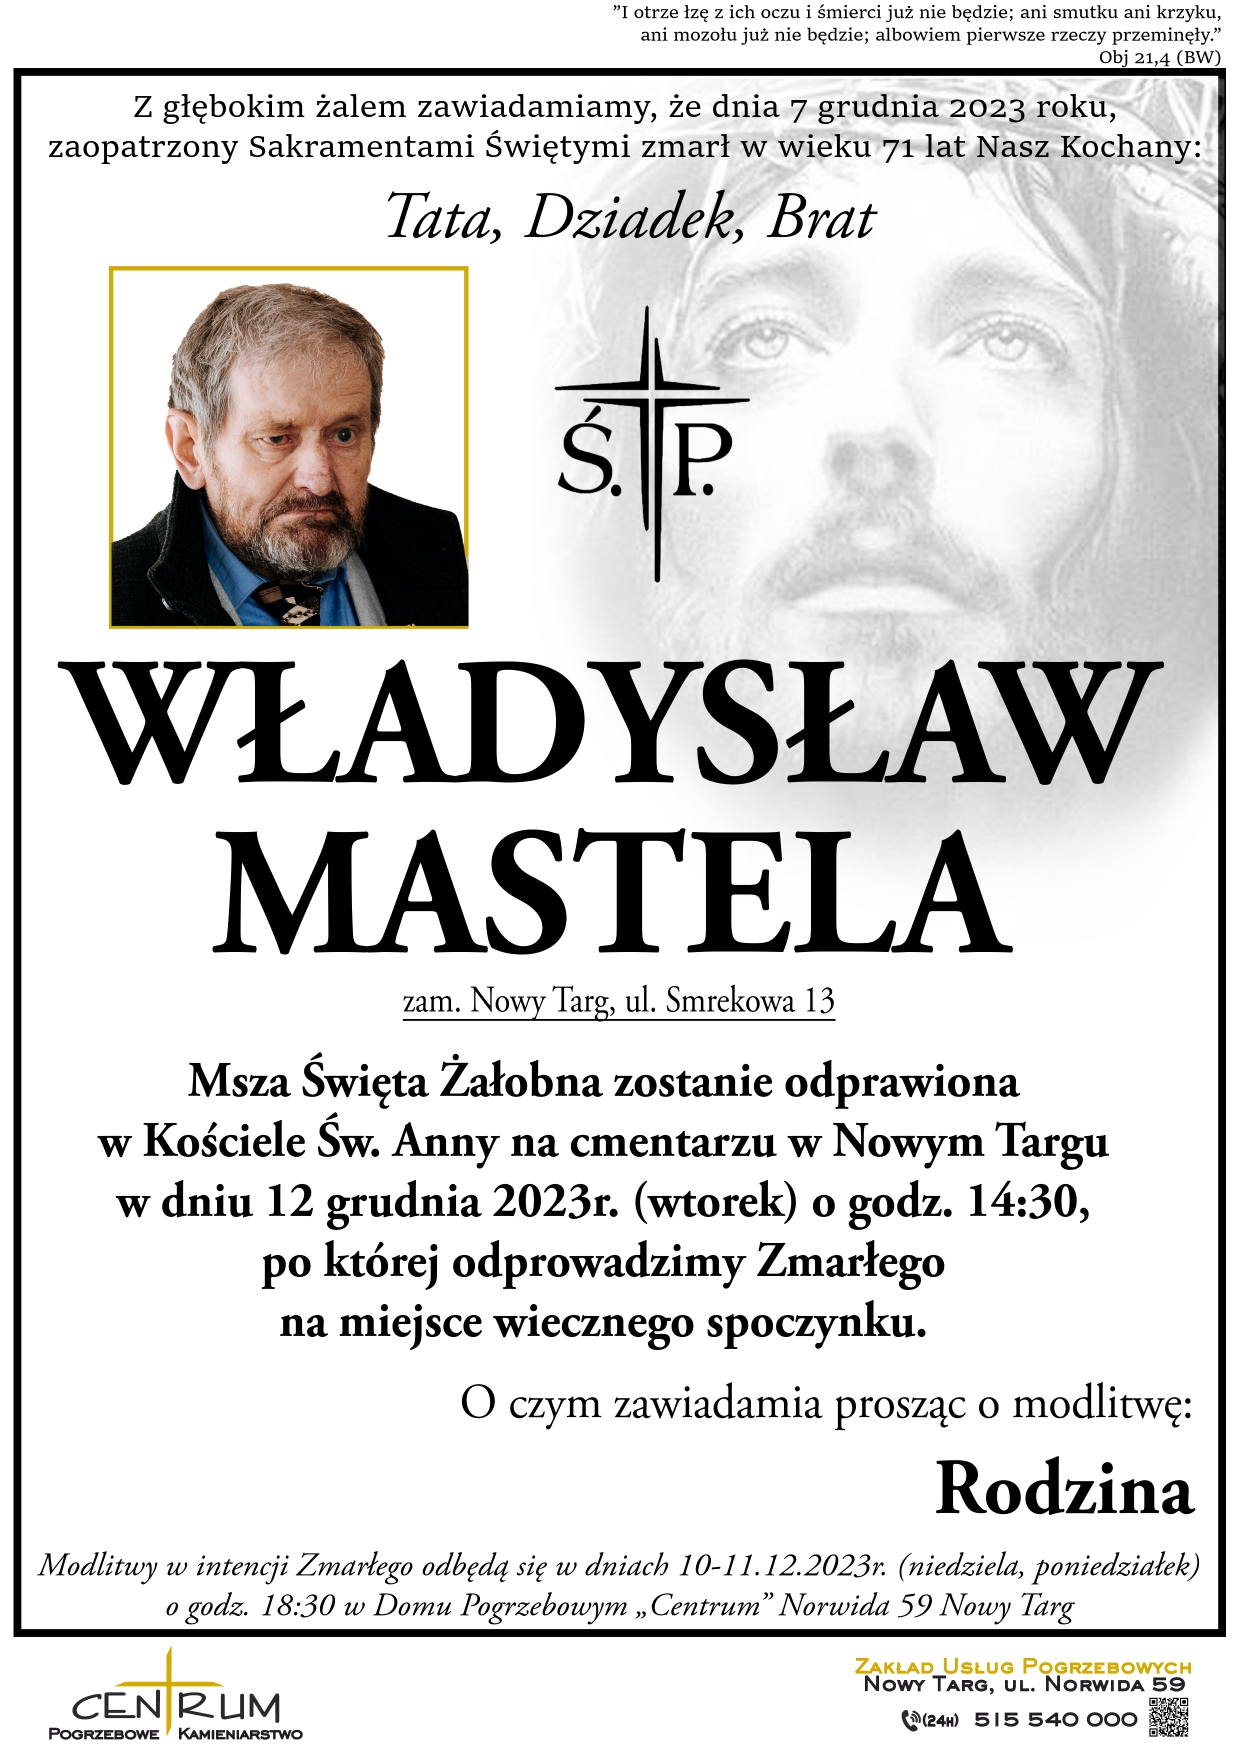 Władysław Mastela